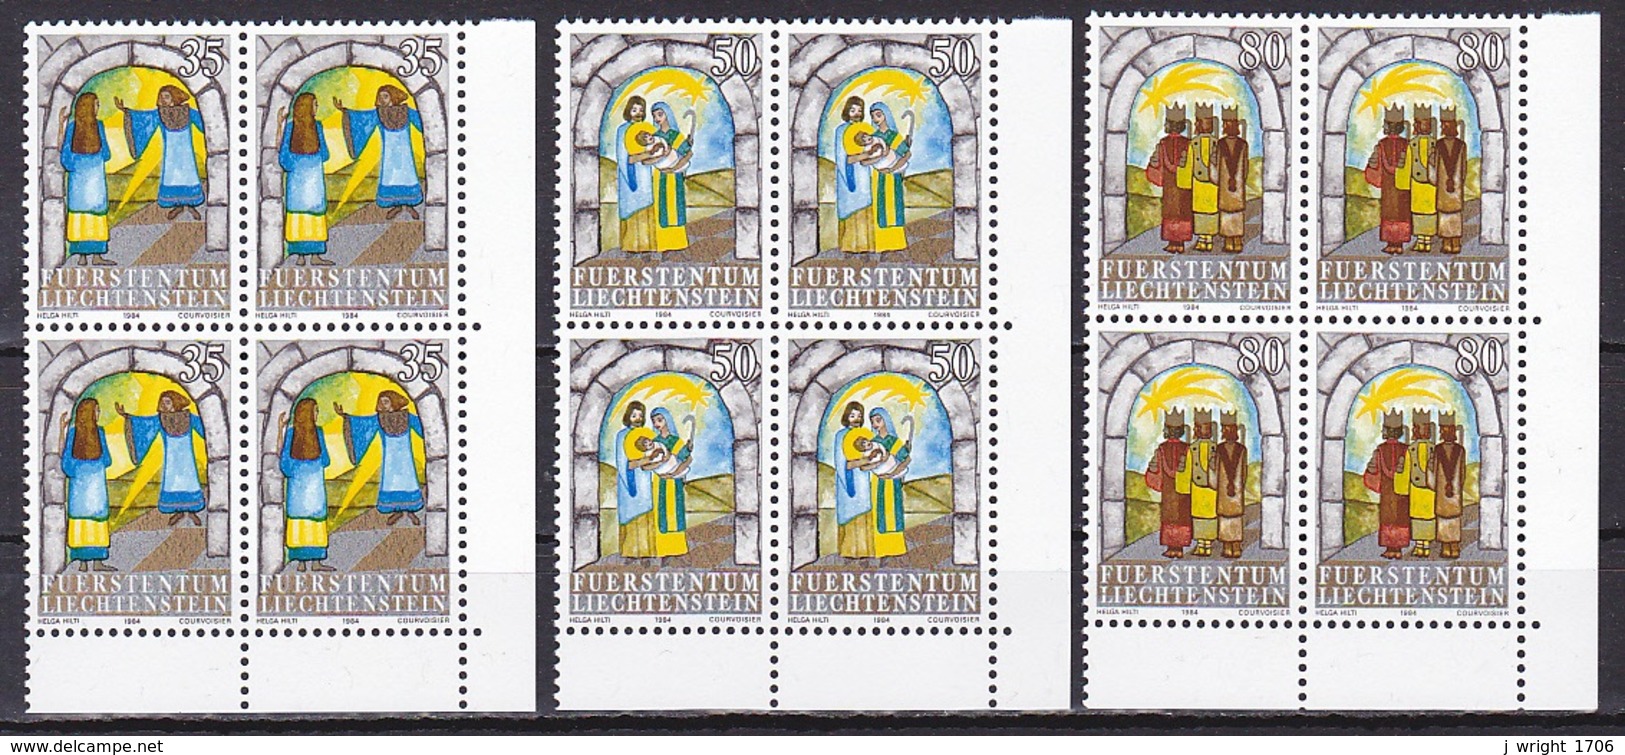 Liechtenstein/1984 - Christmas/Weihnachtsmarken - Block Set - MNH - Unused Stamps